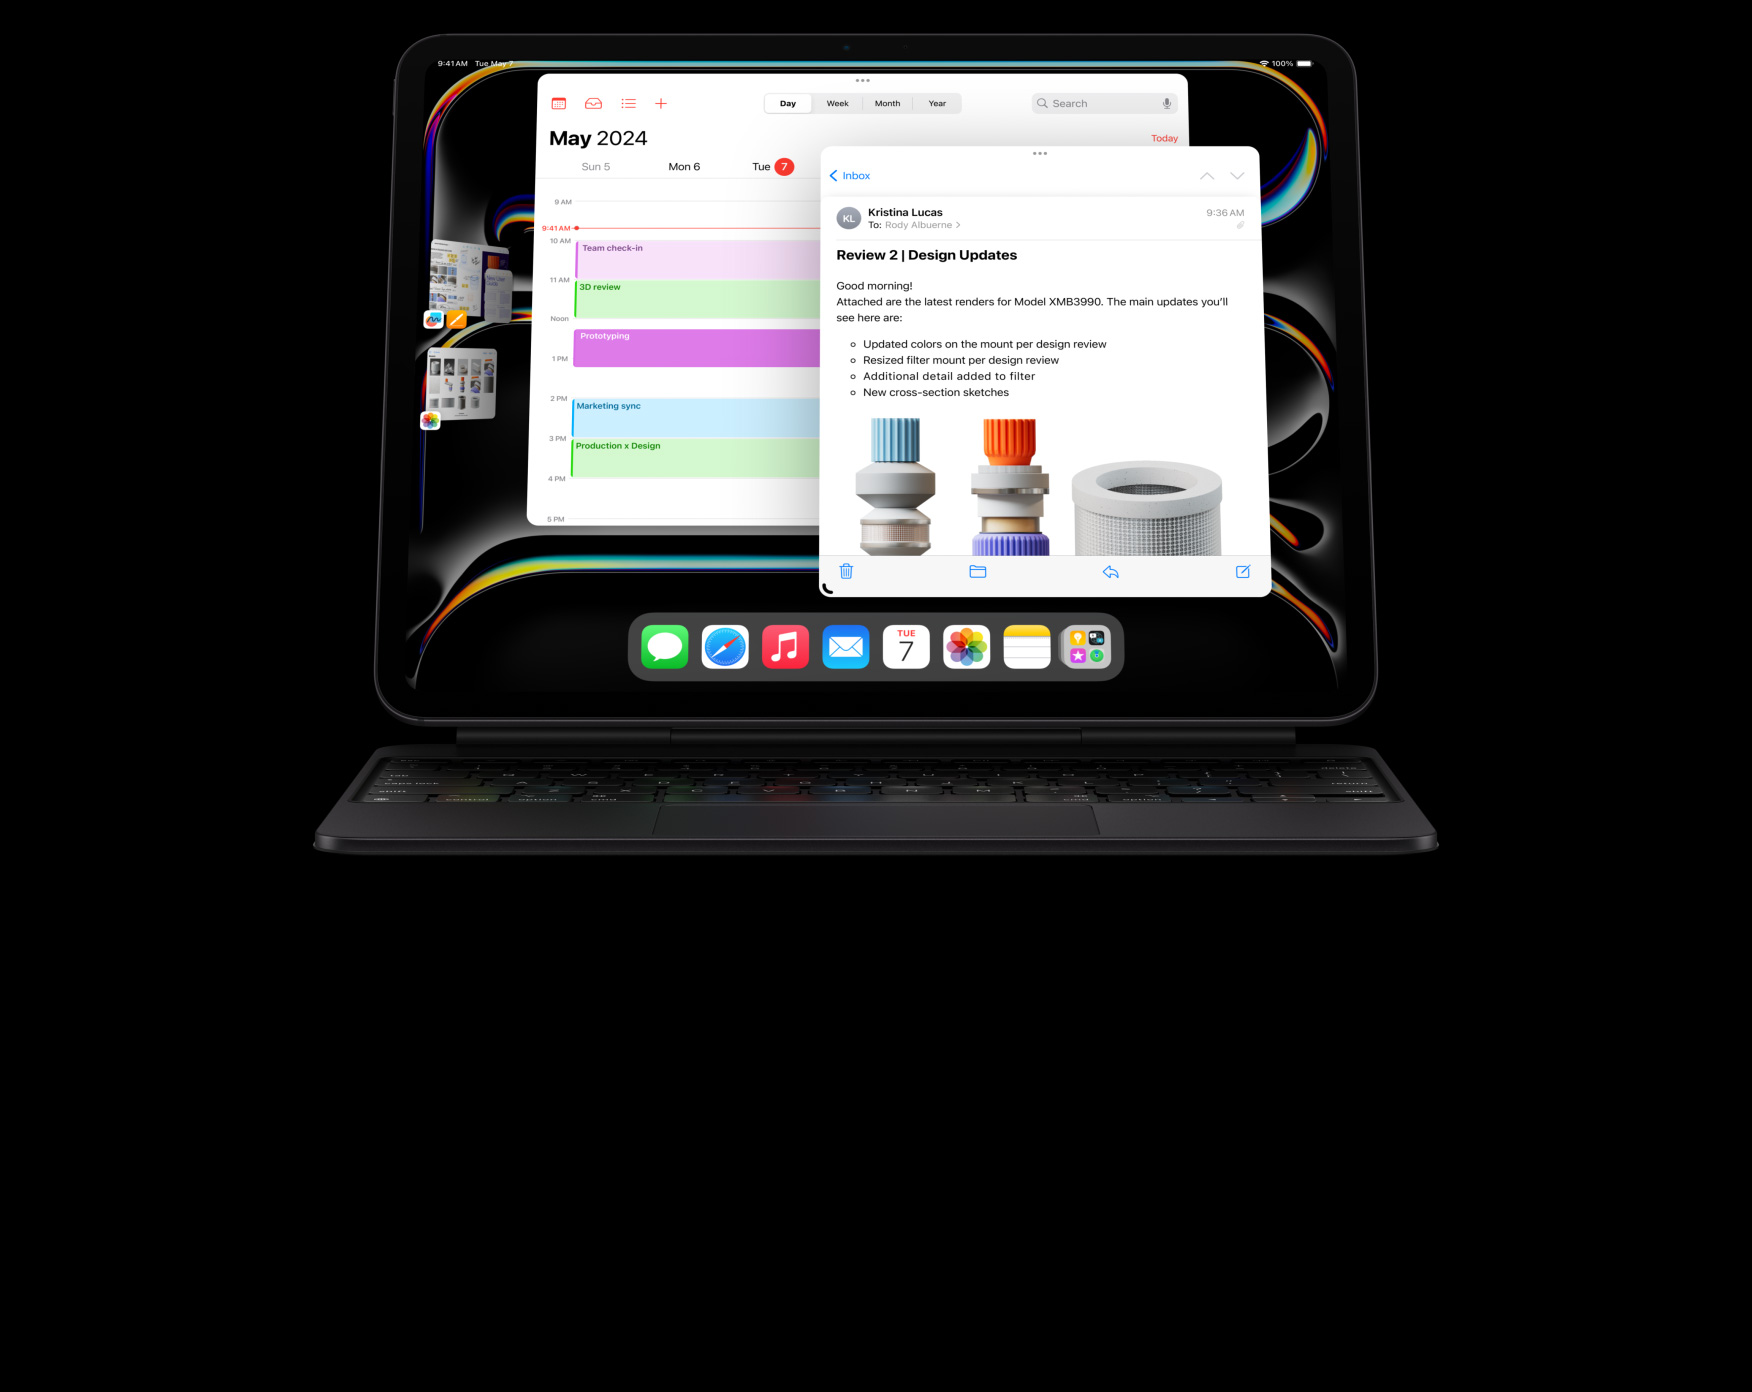 iPad Pro terpasang ke Magic Keyboard dalam orientasi lanskap, pengguna melakukan multitasking dengan beberapa aplikasi terbuka